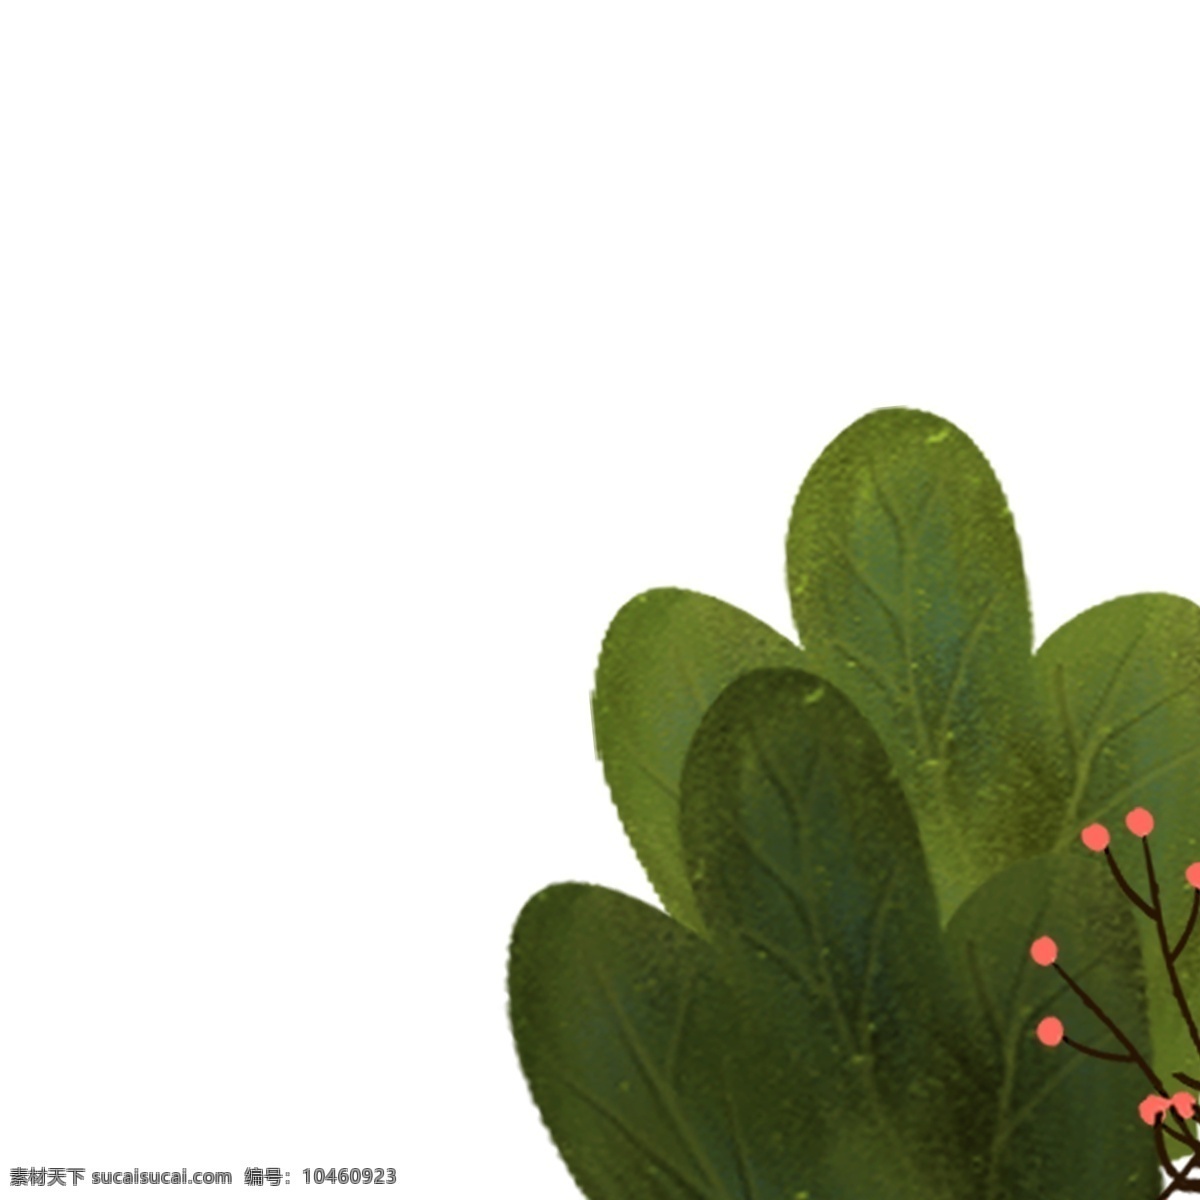 卡通 生态 植物 免 抠 图 红色花朵 叶子 卡通草丛 绿色植物 绿色生态 卡通叶子 绿色枝叶 漂亮的植物 草丛